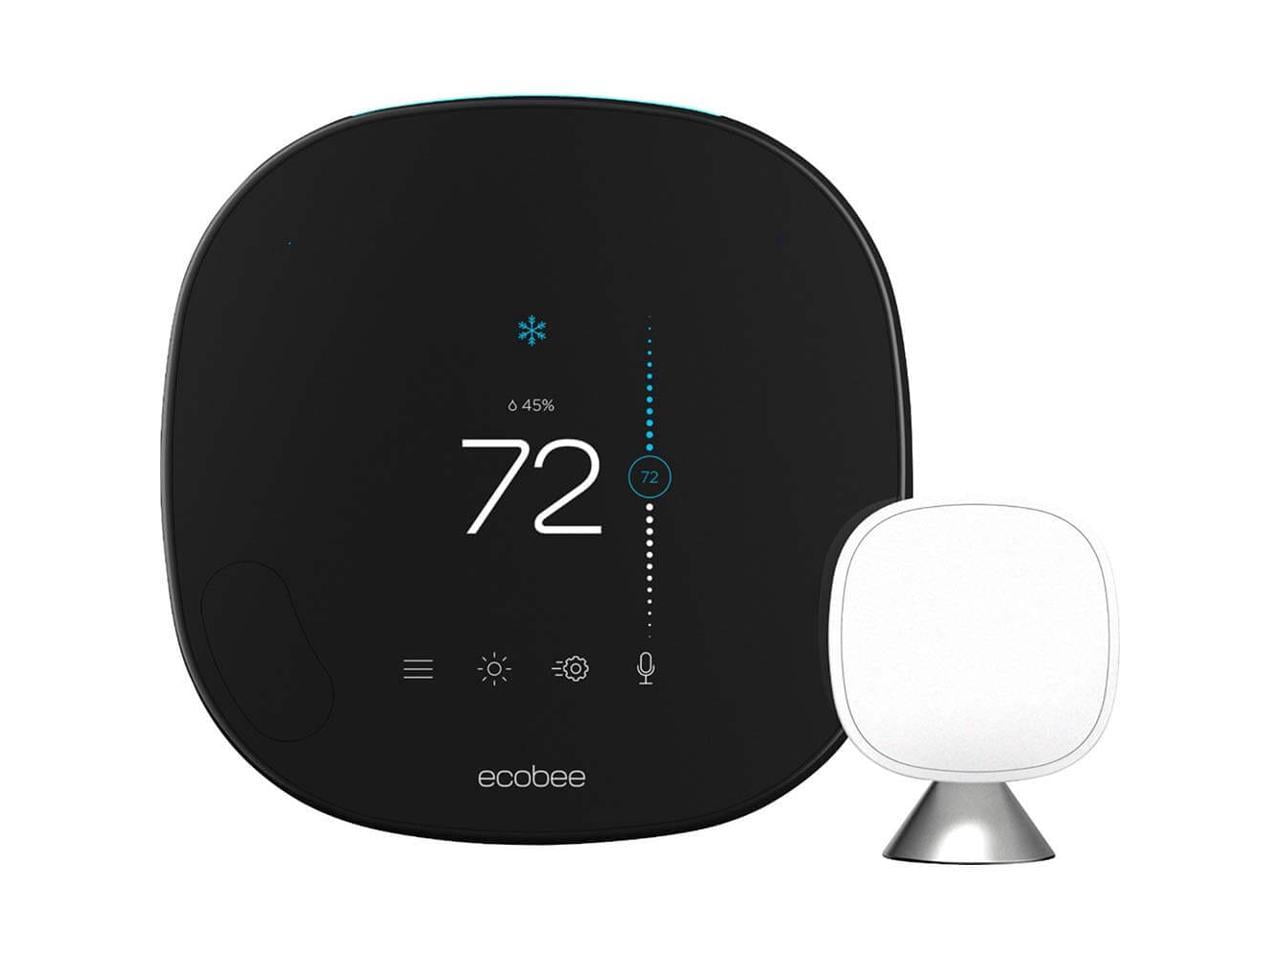 Excellent prix pour ce kit maison connectée avec Echo Show 5, thermostat  intelligent et smart plugs !